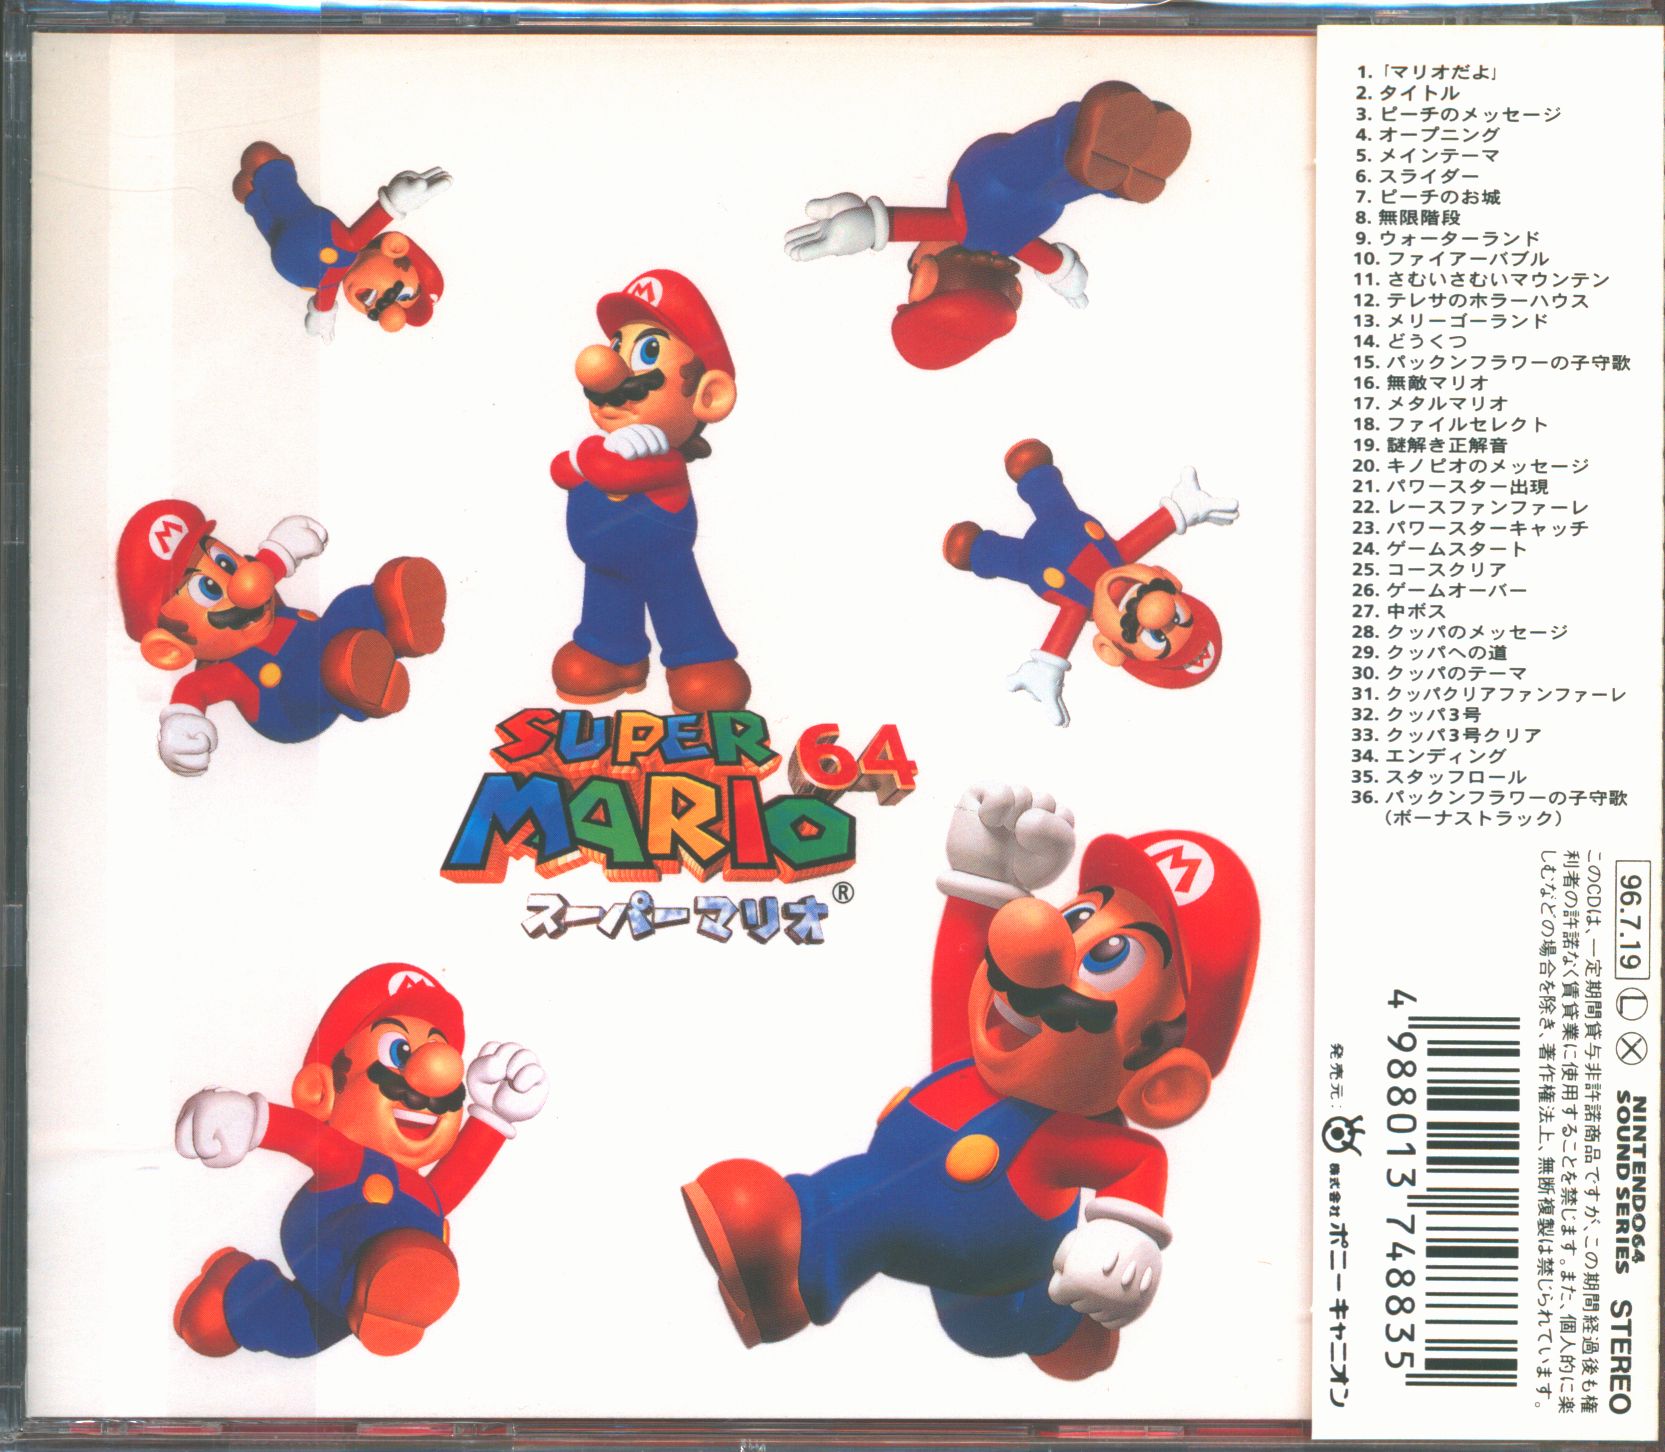 スーパーマリオ64オリジナルサウンドトラック CD - アニメ